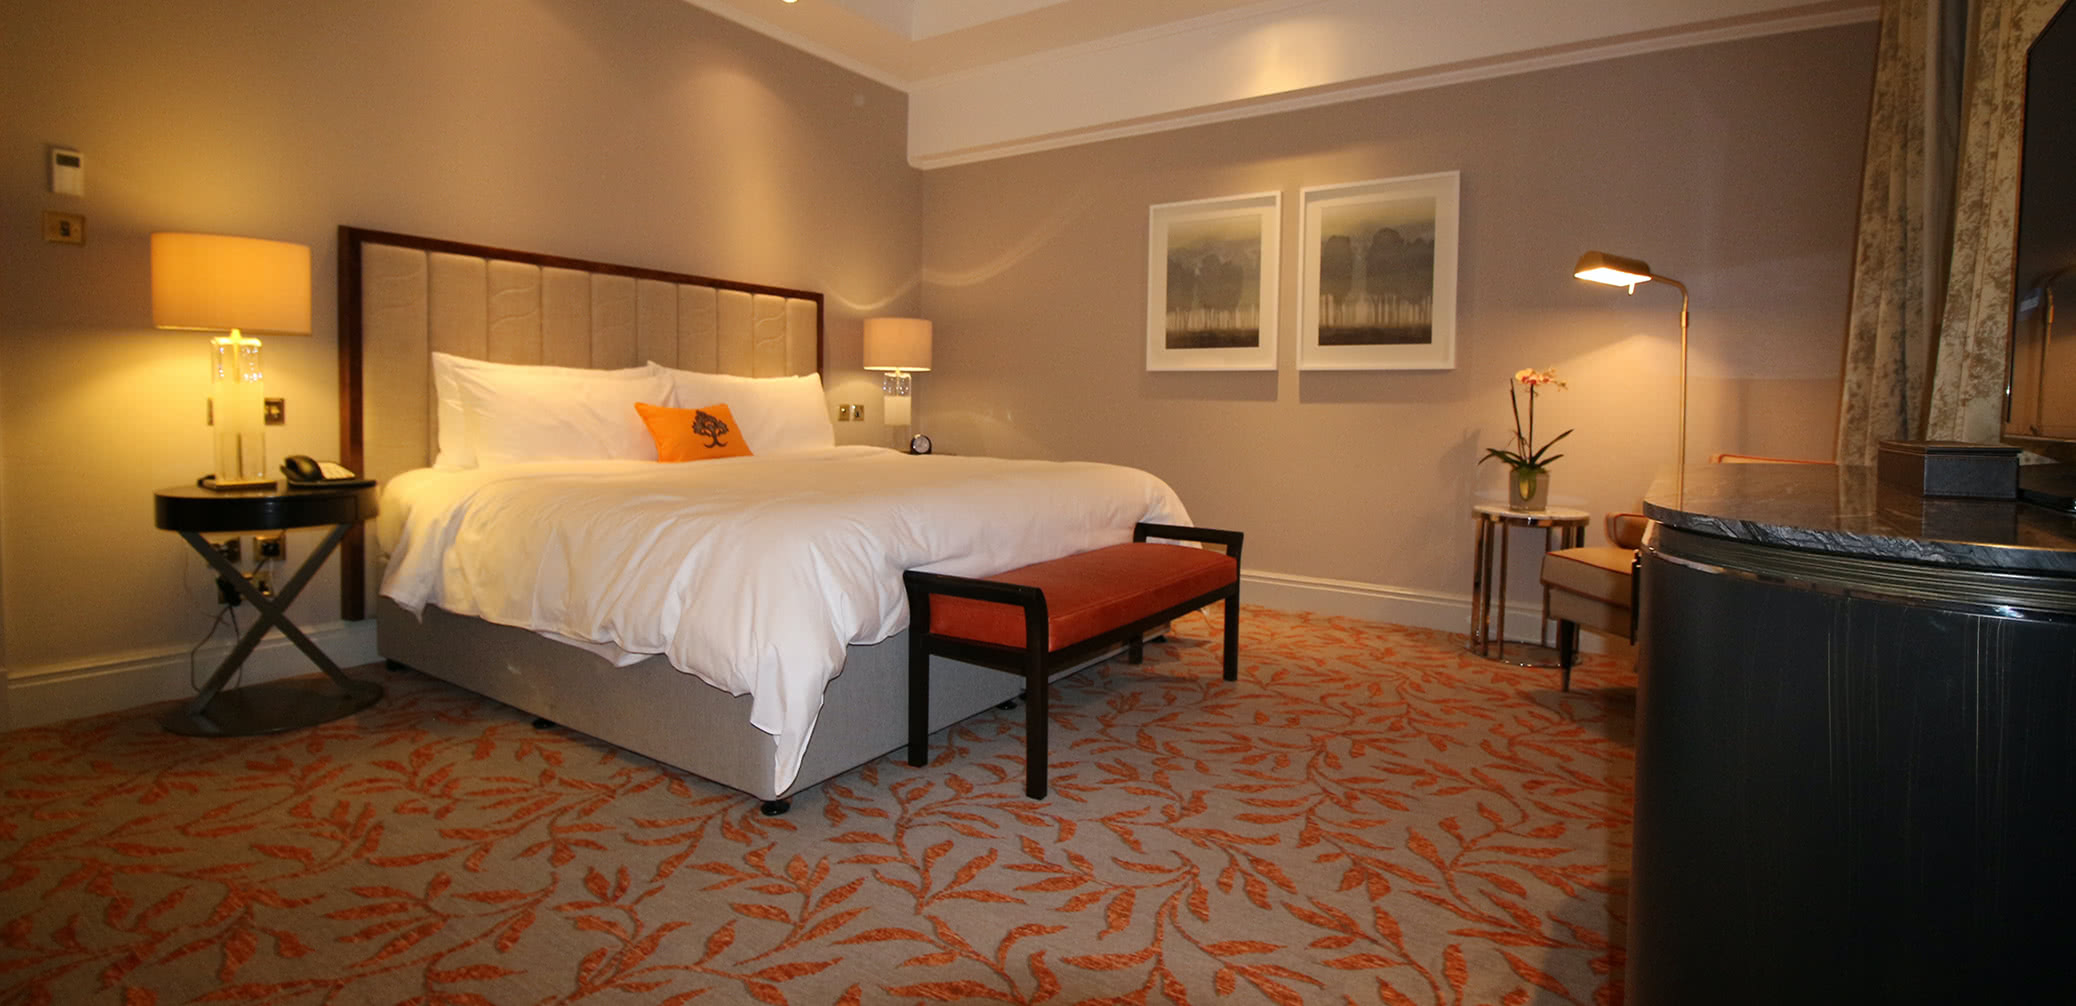 Best Marriott Hotels In Tianjin: Ritz-Carlton Vs St Regis, Westin Vs Sheraton